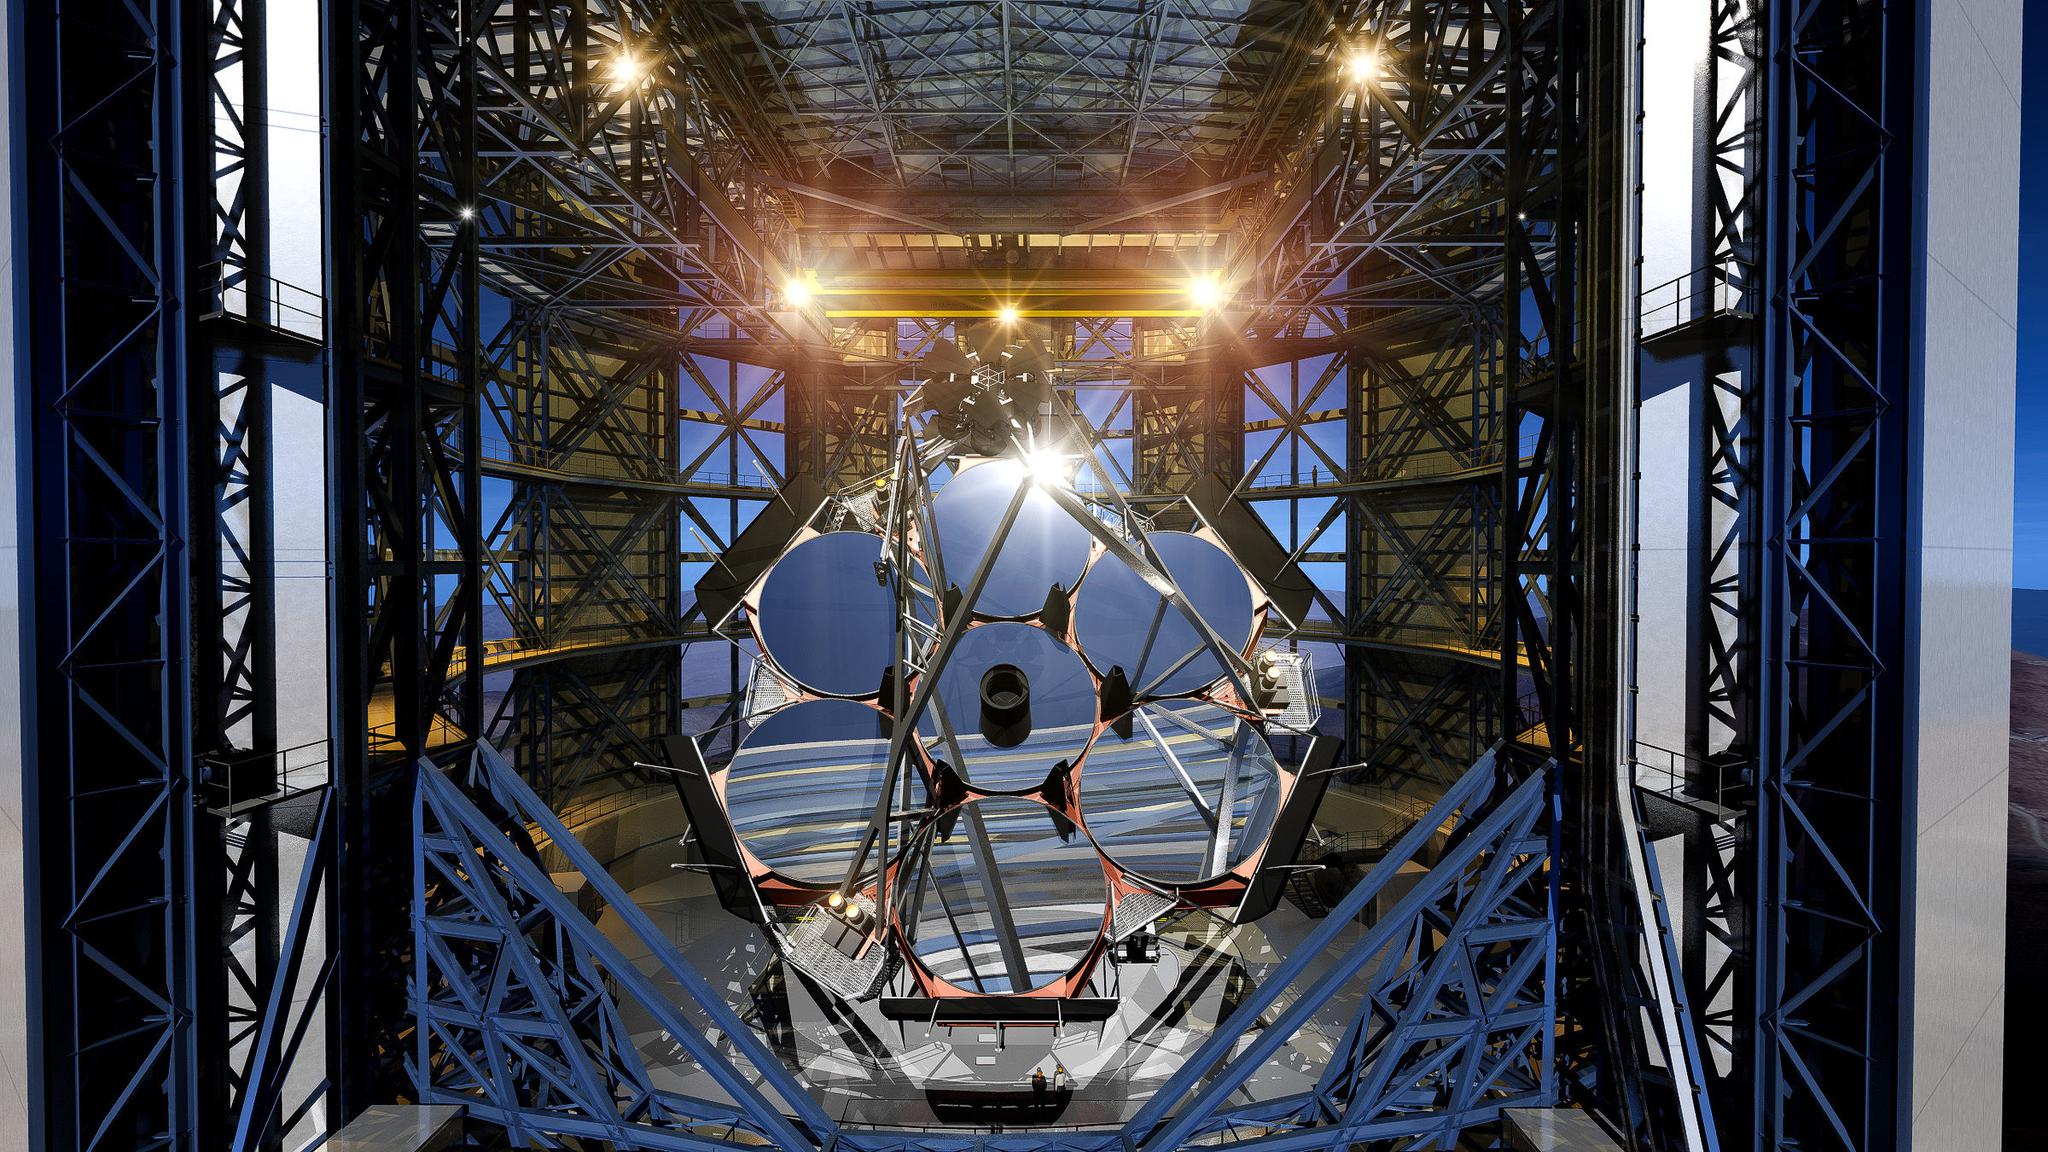  巨型麦哲伦望远镜渲染图 